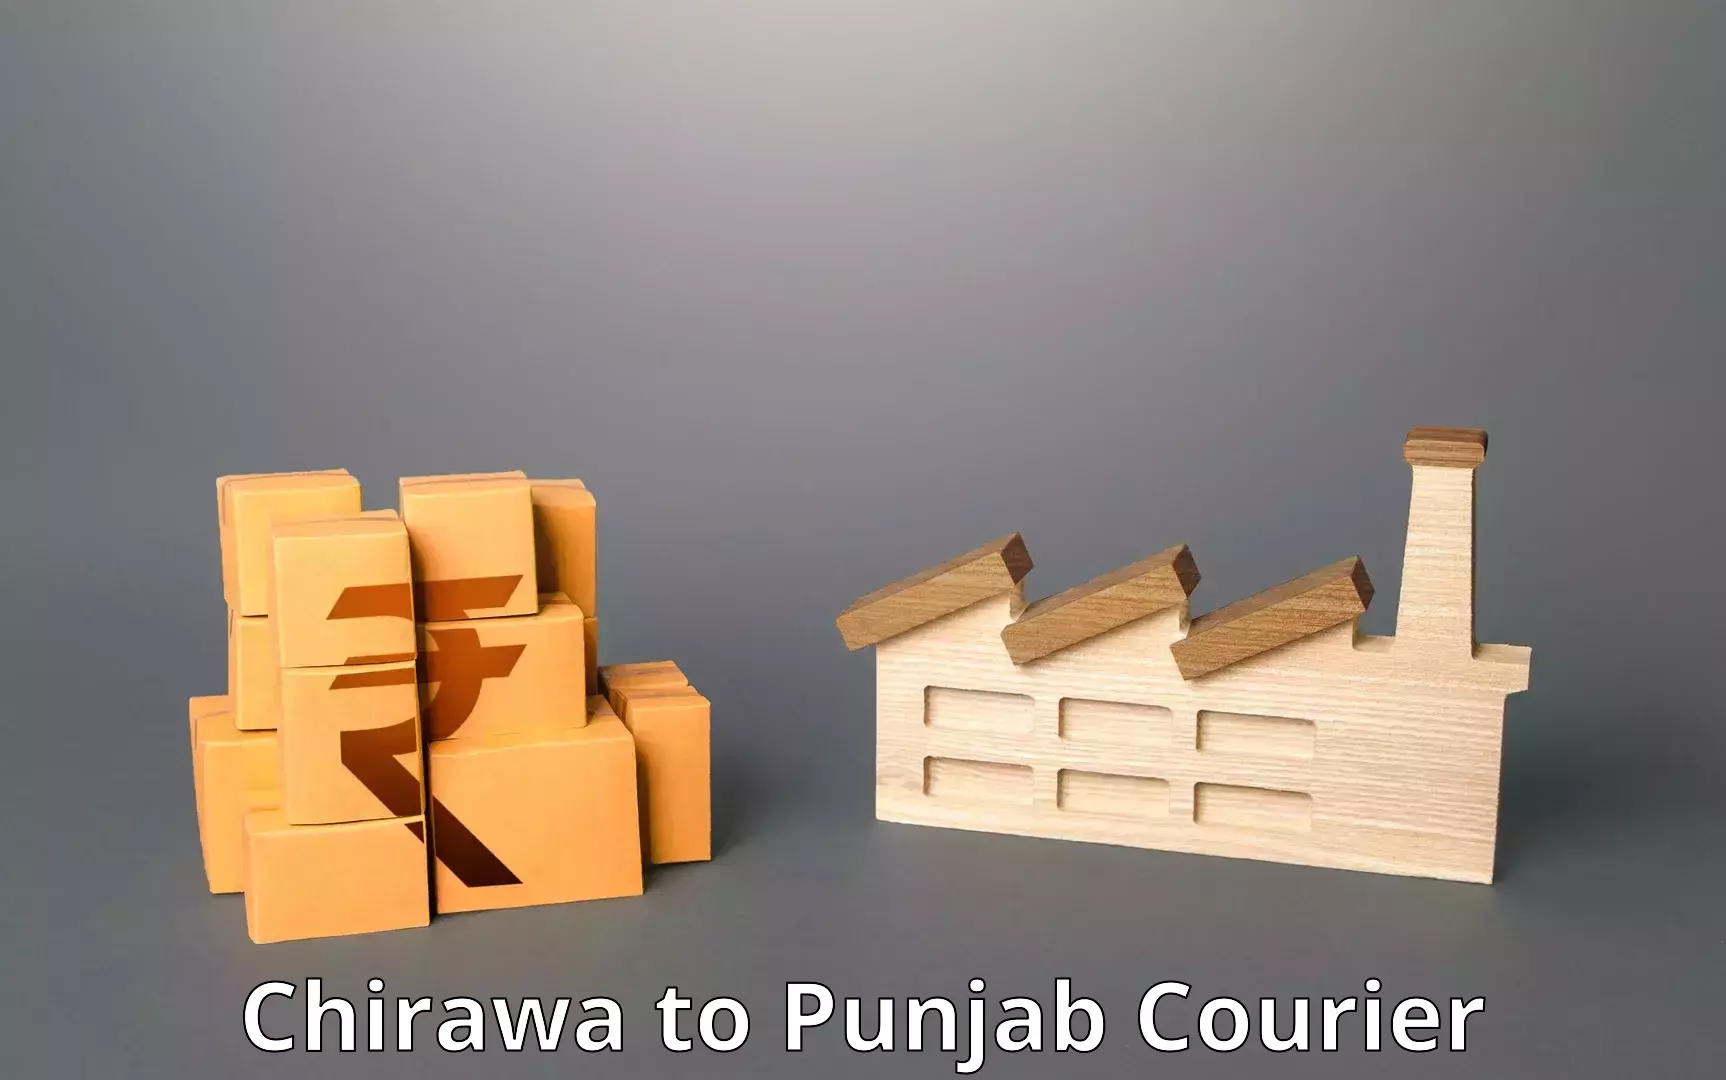 Digital courier platforms Chirawa to Talwara